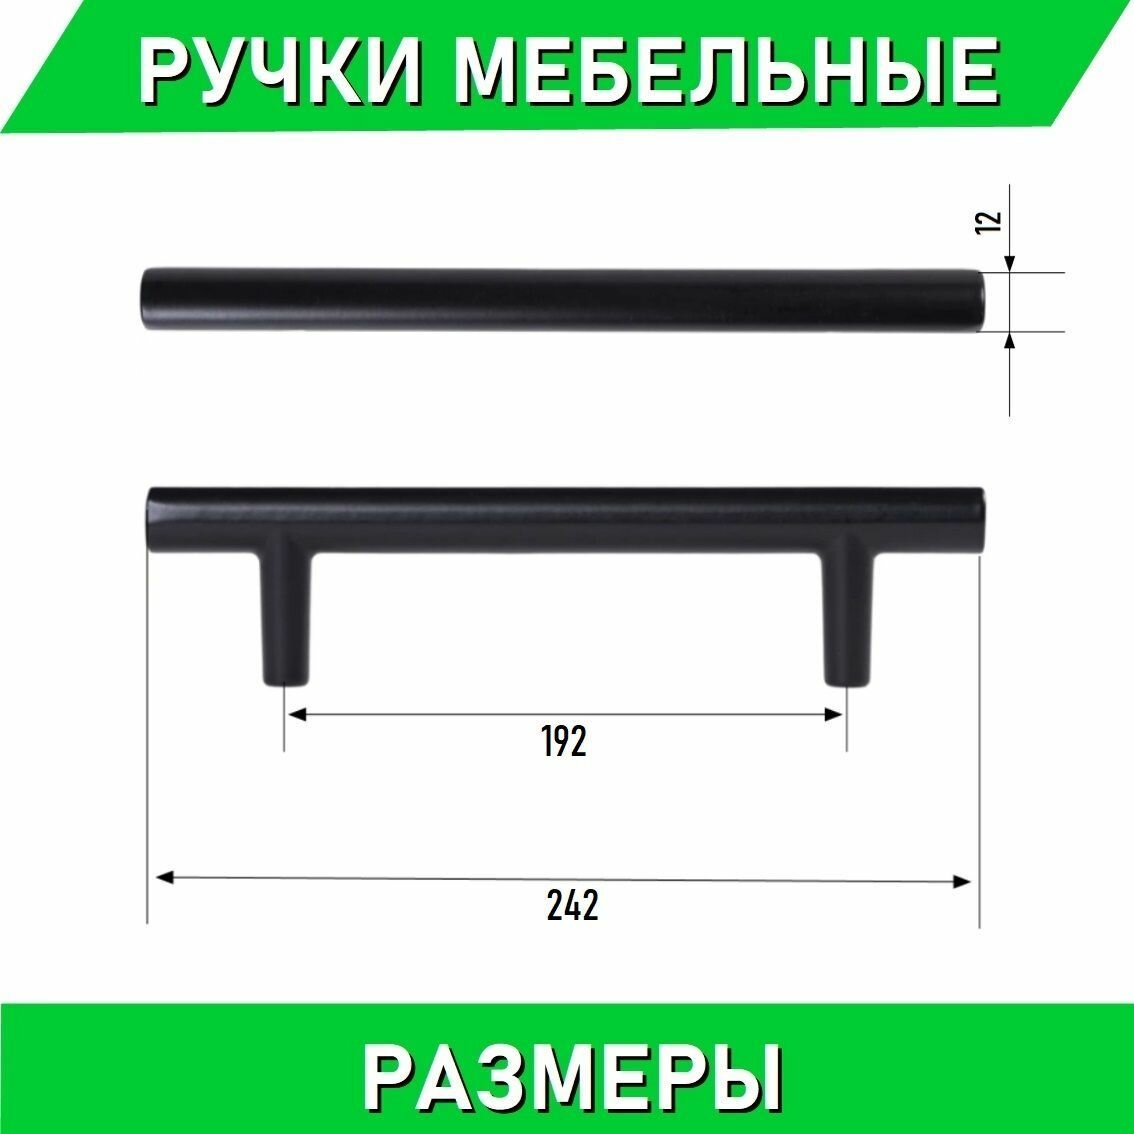 Мебельные ручки-рейлинг 192мм / 242мм, D12мм, черный матовый 3 шт. + крепеж, полнотелые литые